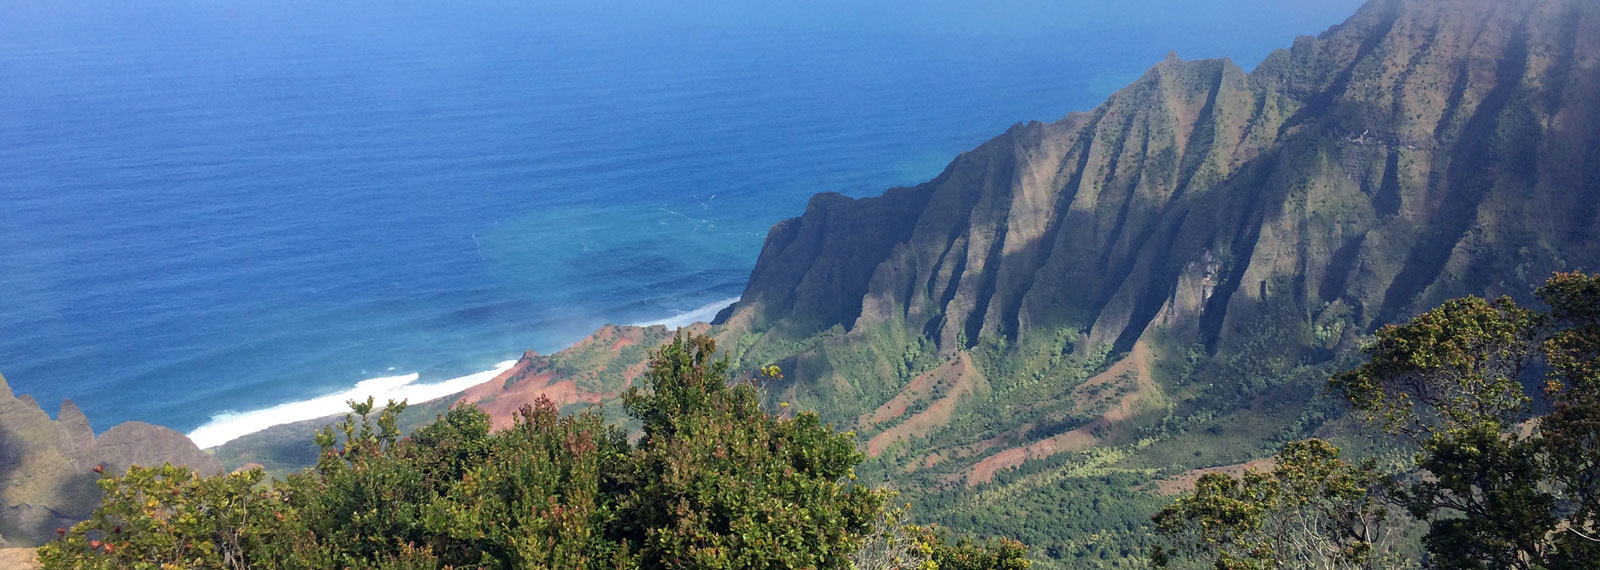 Explore Hawaii, 4 Hawaiian islands